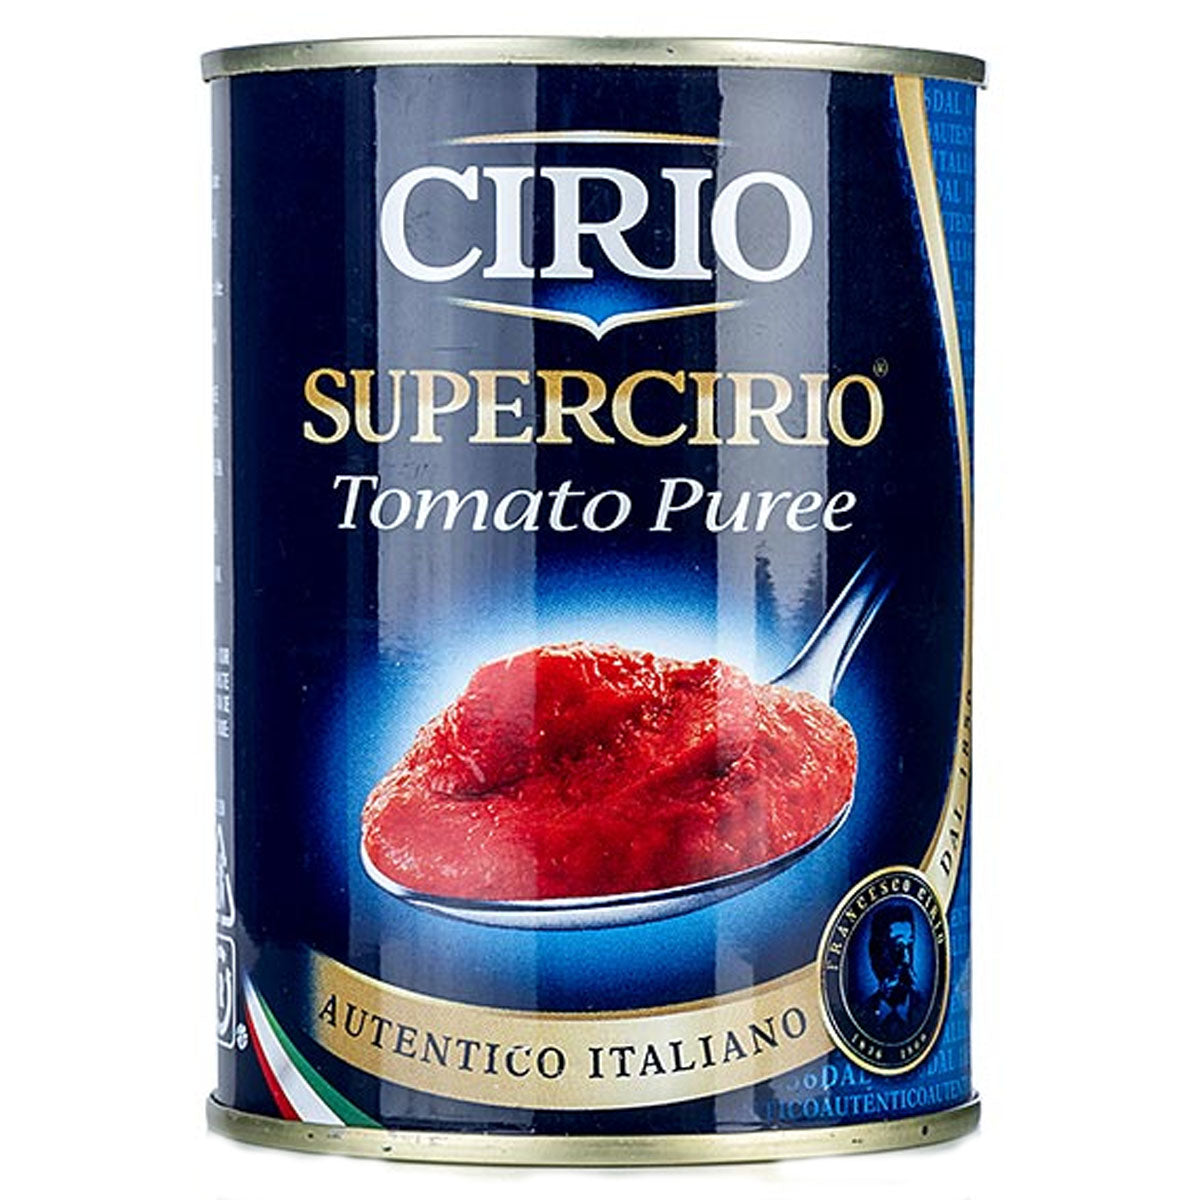 Cirio - Supercirio Tomato Puree - 400g - Continental Food Store